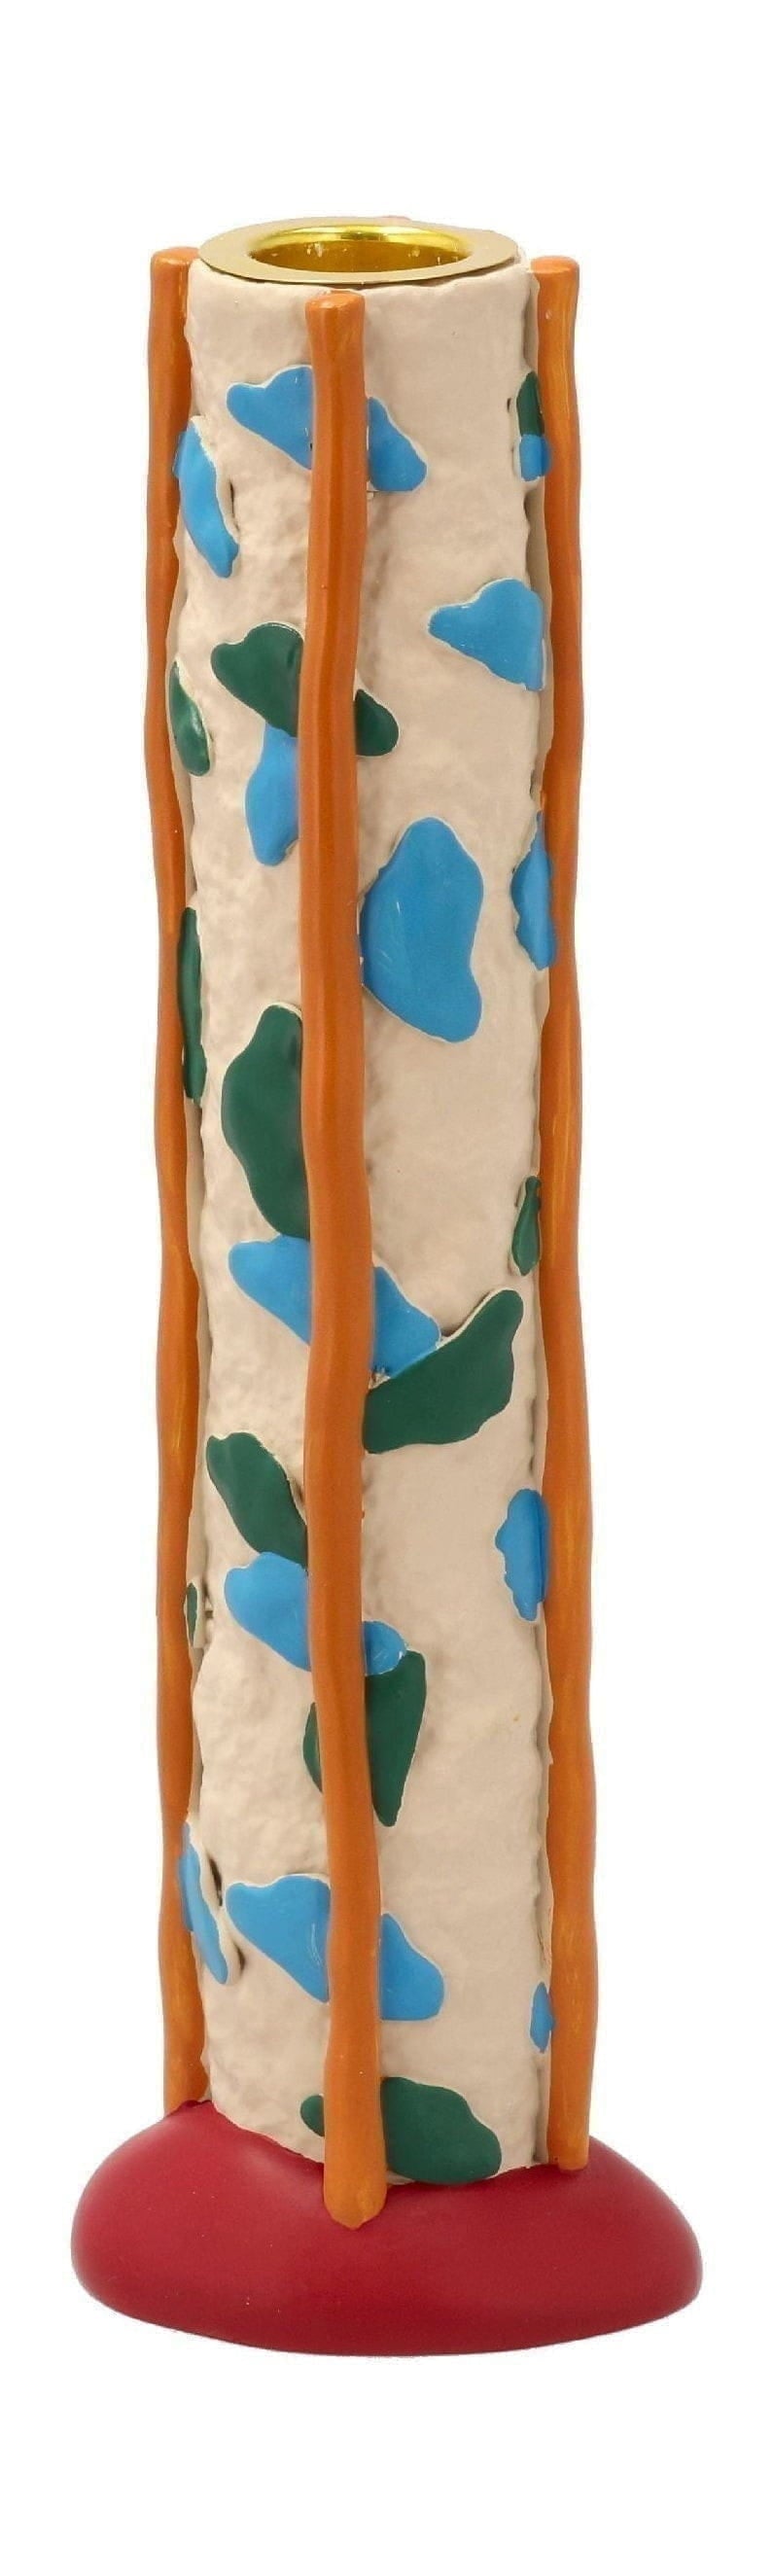 Porta di candele degli stili di collezione Villa con punti, verde/blu